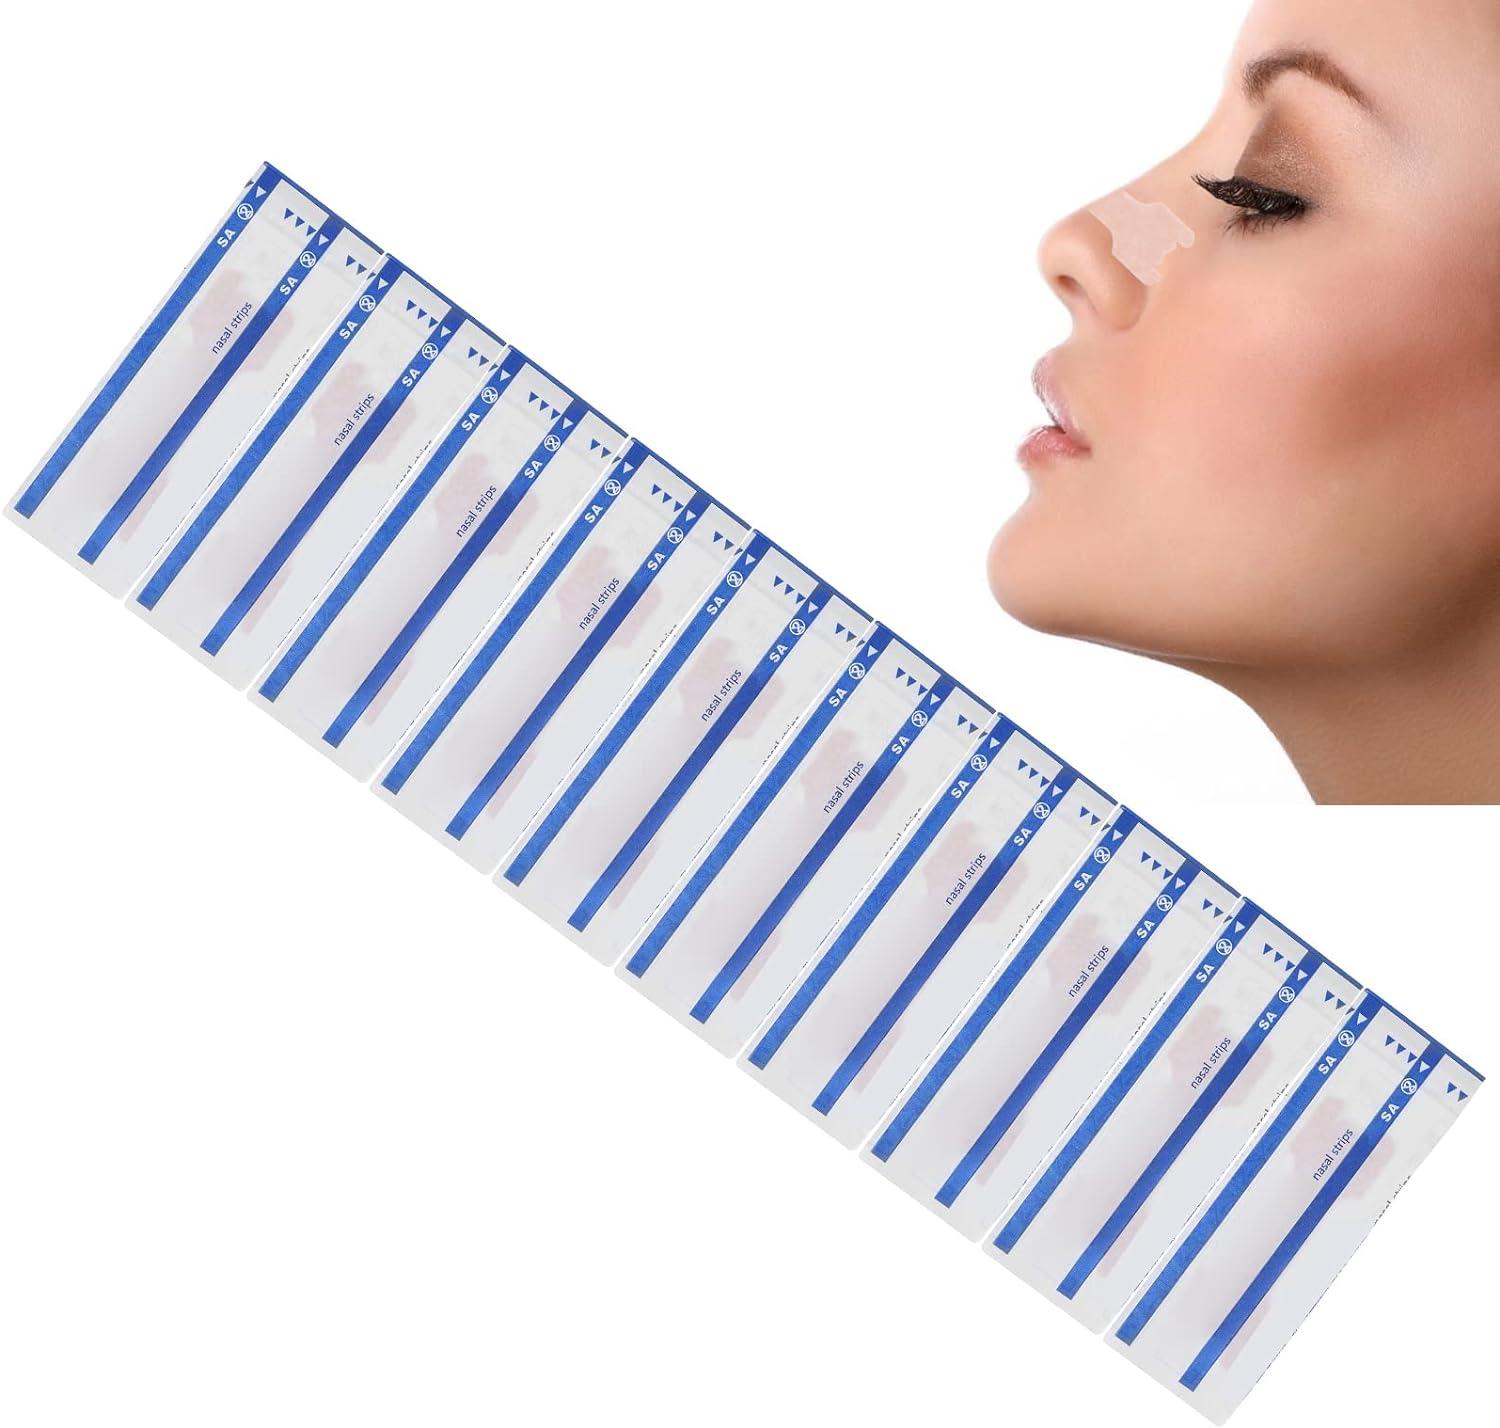 ANGGREK Anti Nasal Strips Single Anti Nasal Strips Single Use Nasal  Congestion Relief Strips Aid Strips for Good Sleep (10pcs)